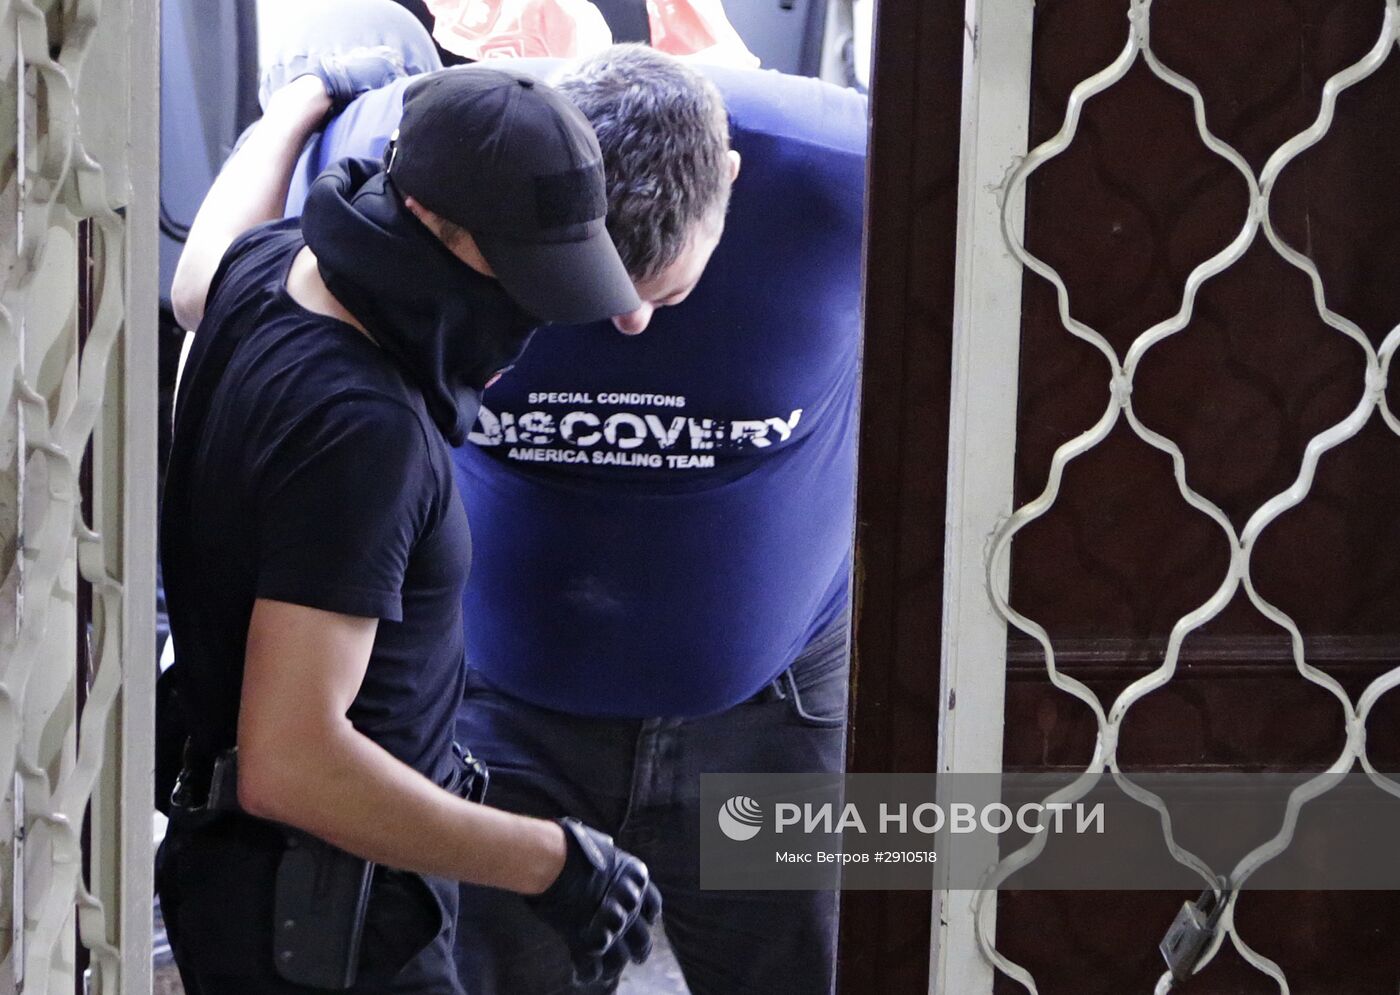 Суд арестовал подозреваемого в организации терактов в Крыму Е. Панова на два месяца